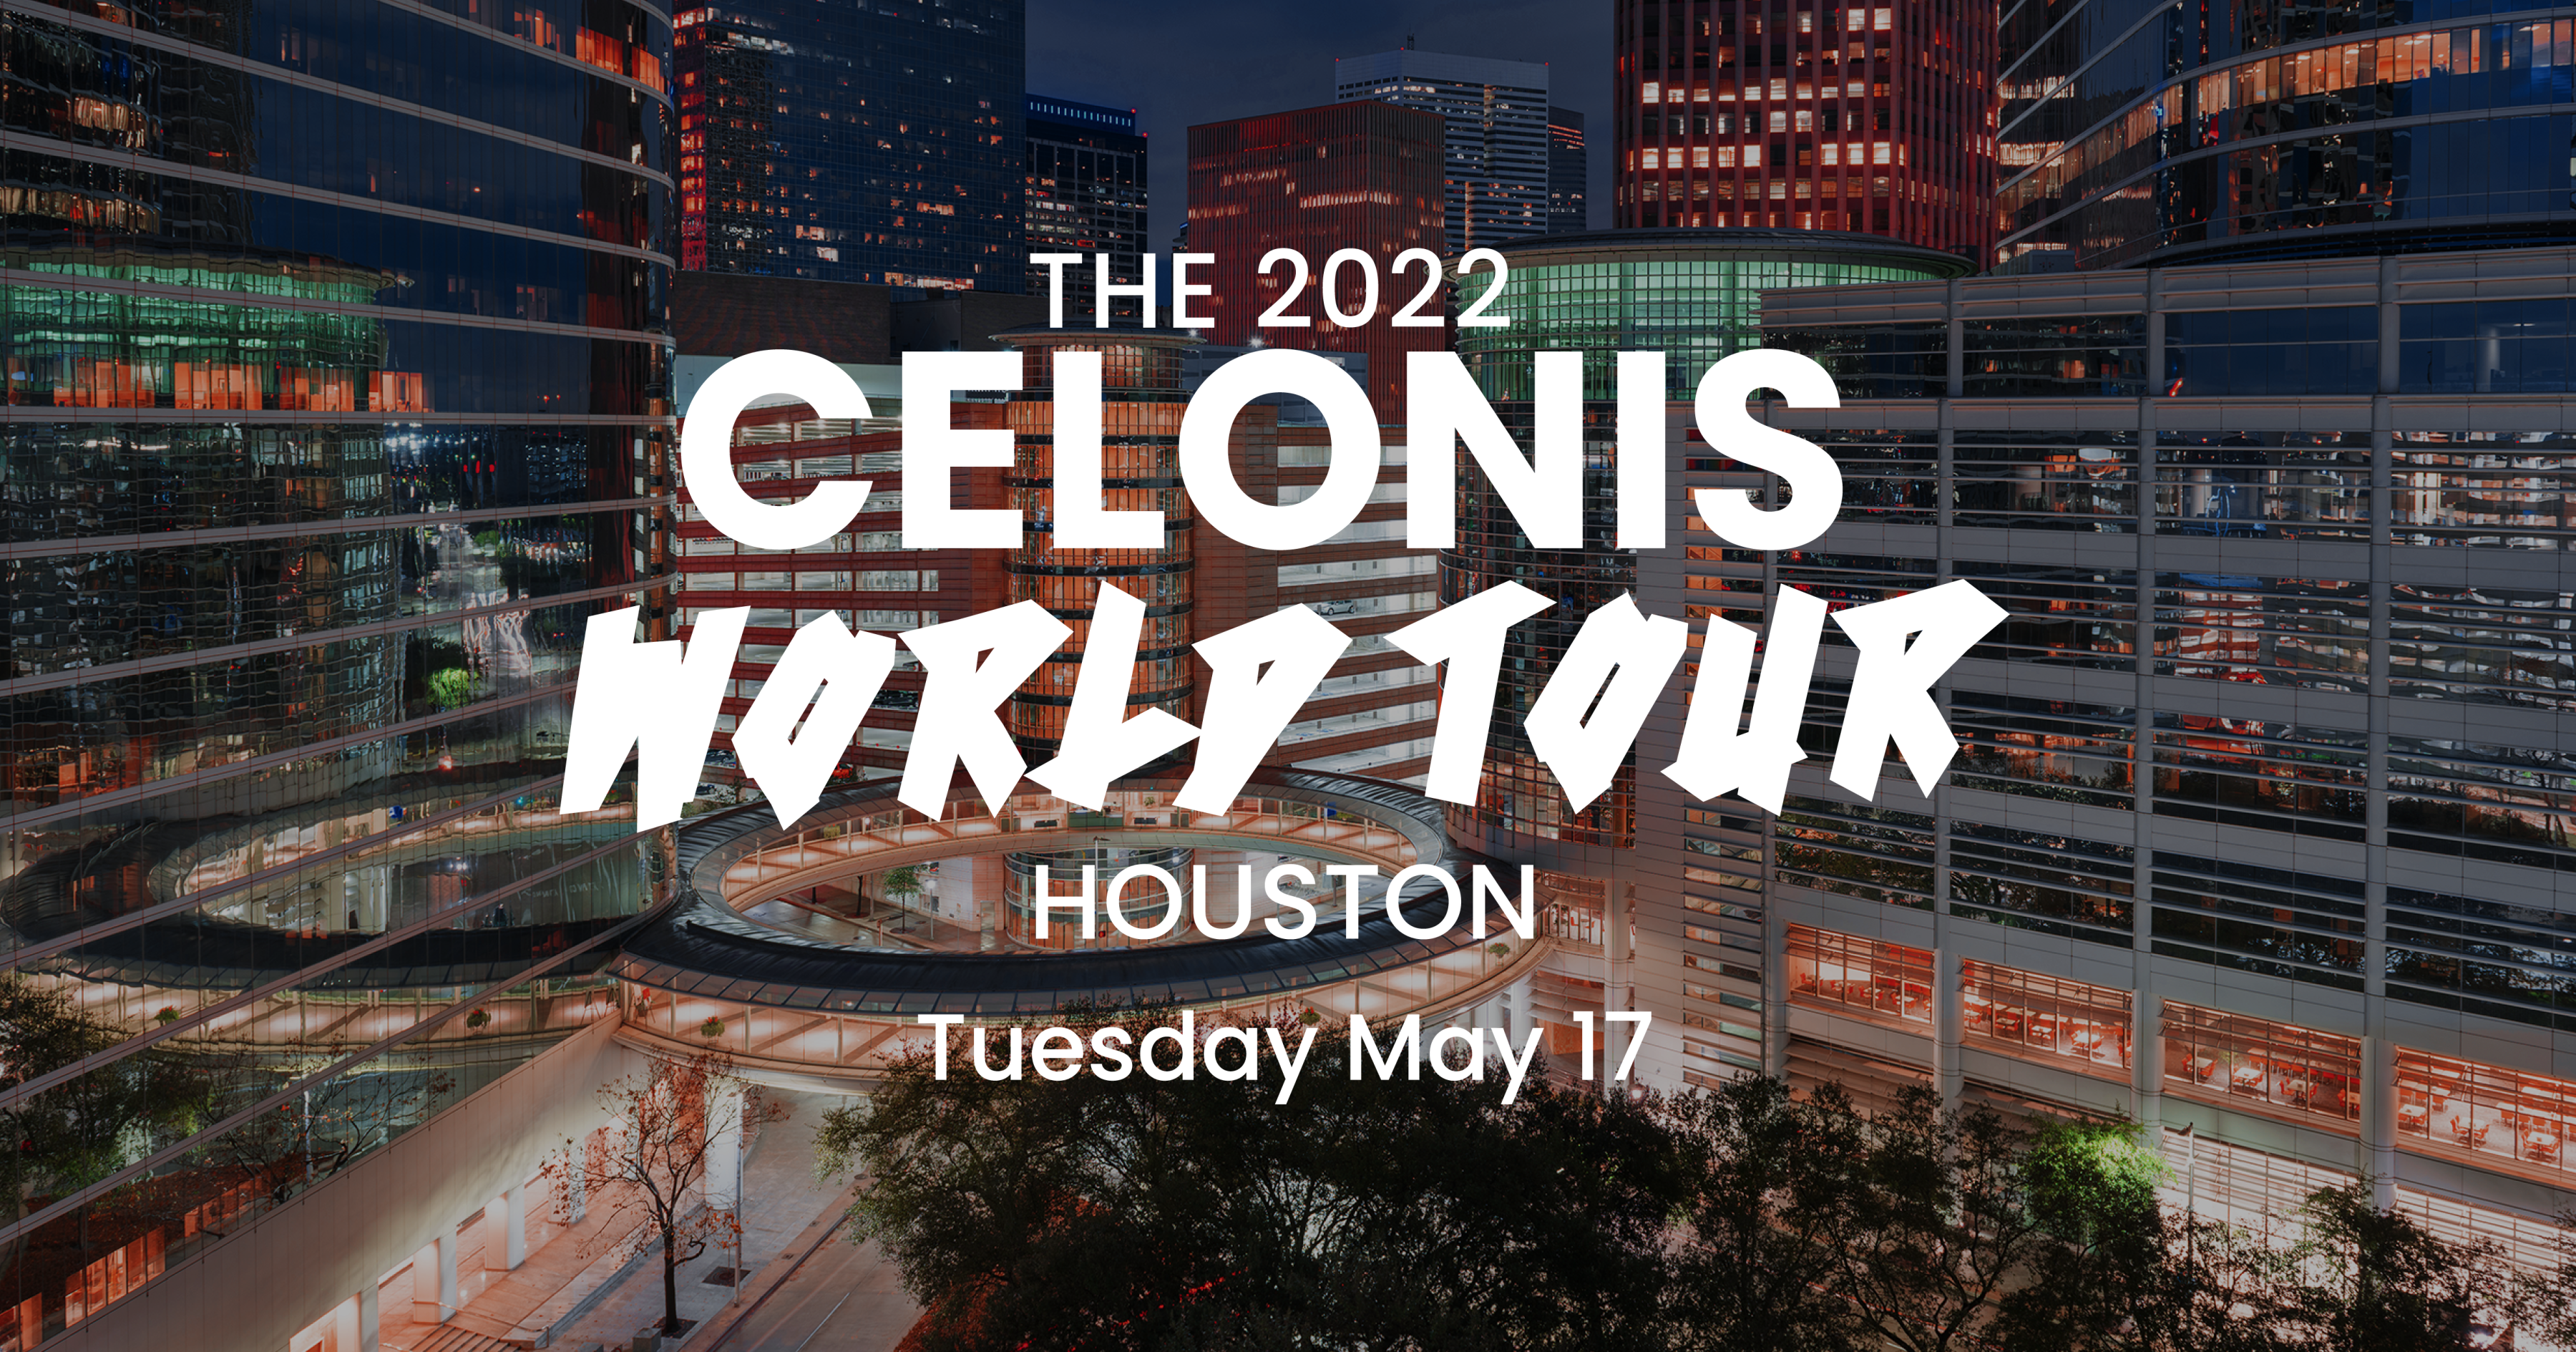 Celonis World Tour 2022 Houston